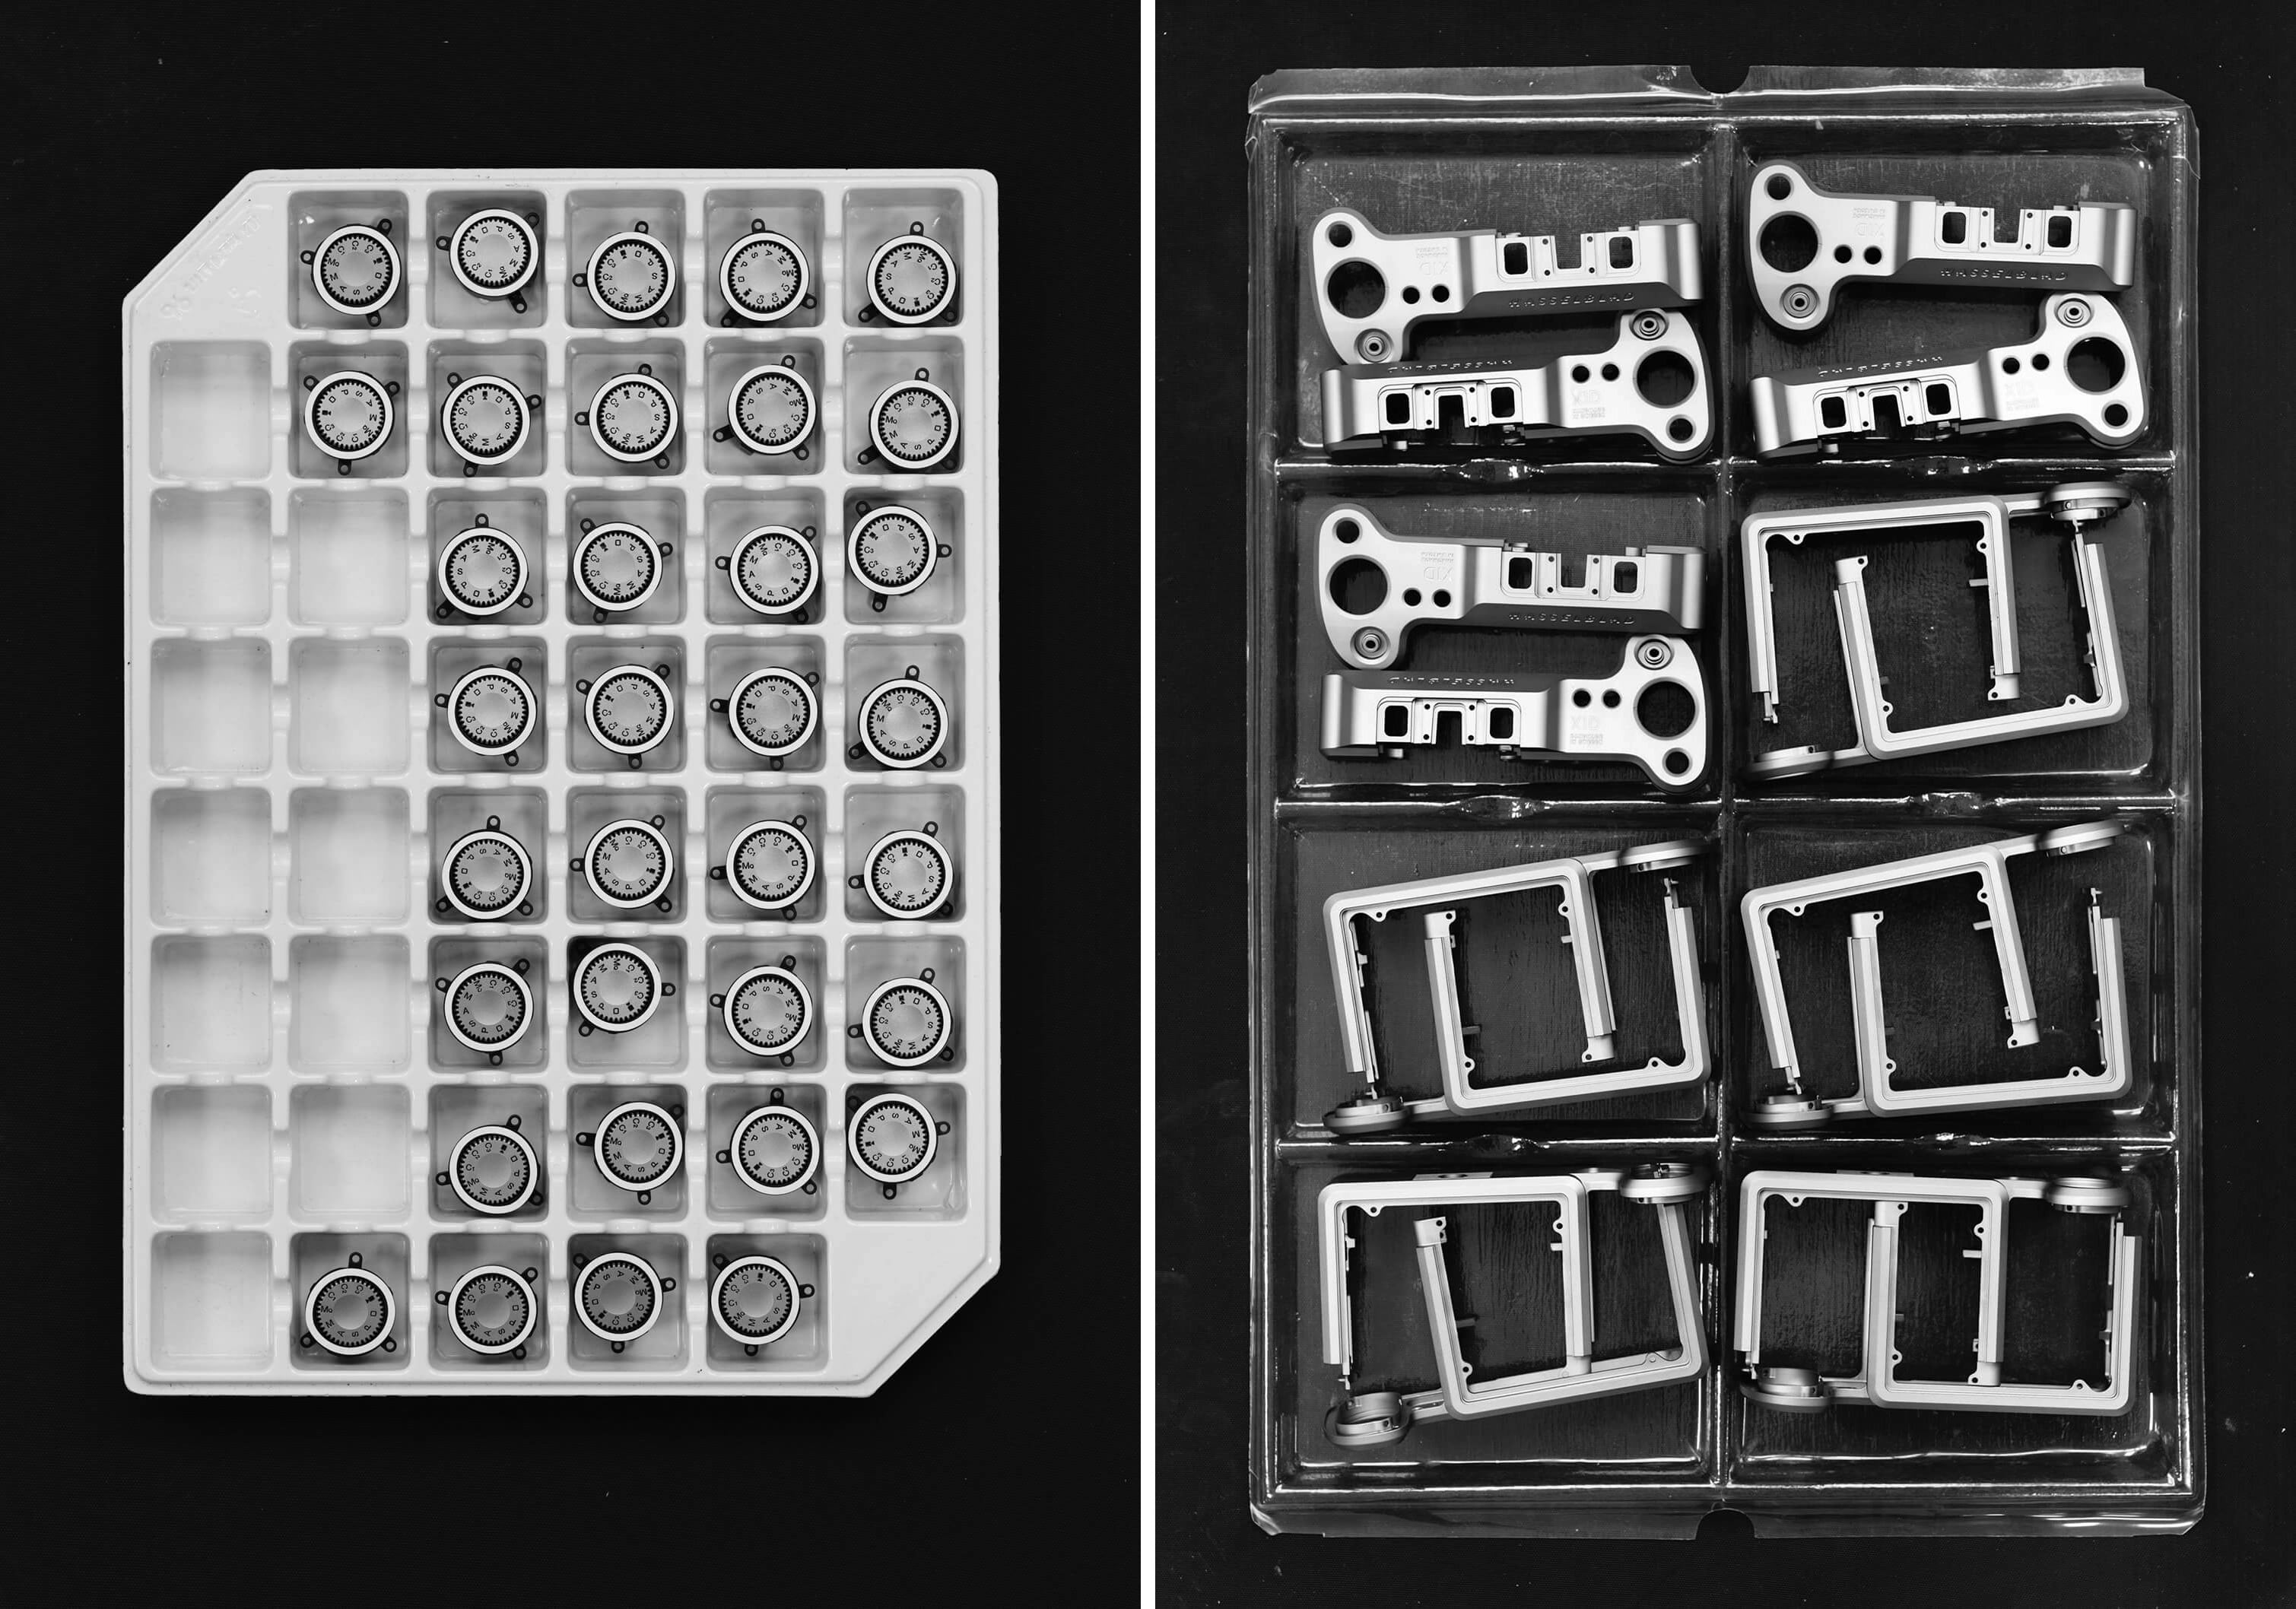 Hasselblad chia sẻ triết lý thiết kế máy ảnh dòng X của mình trong loạt video đằng sau quy trình sản xuất